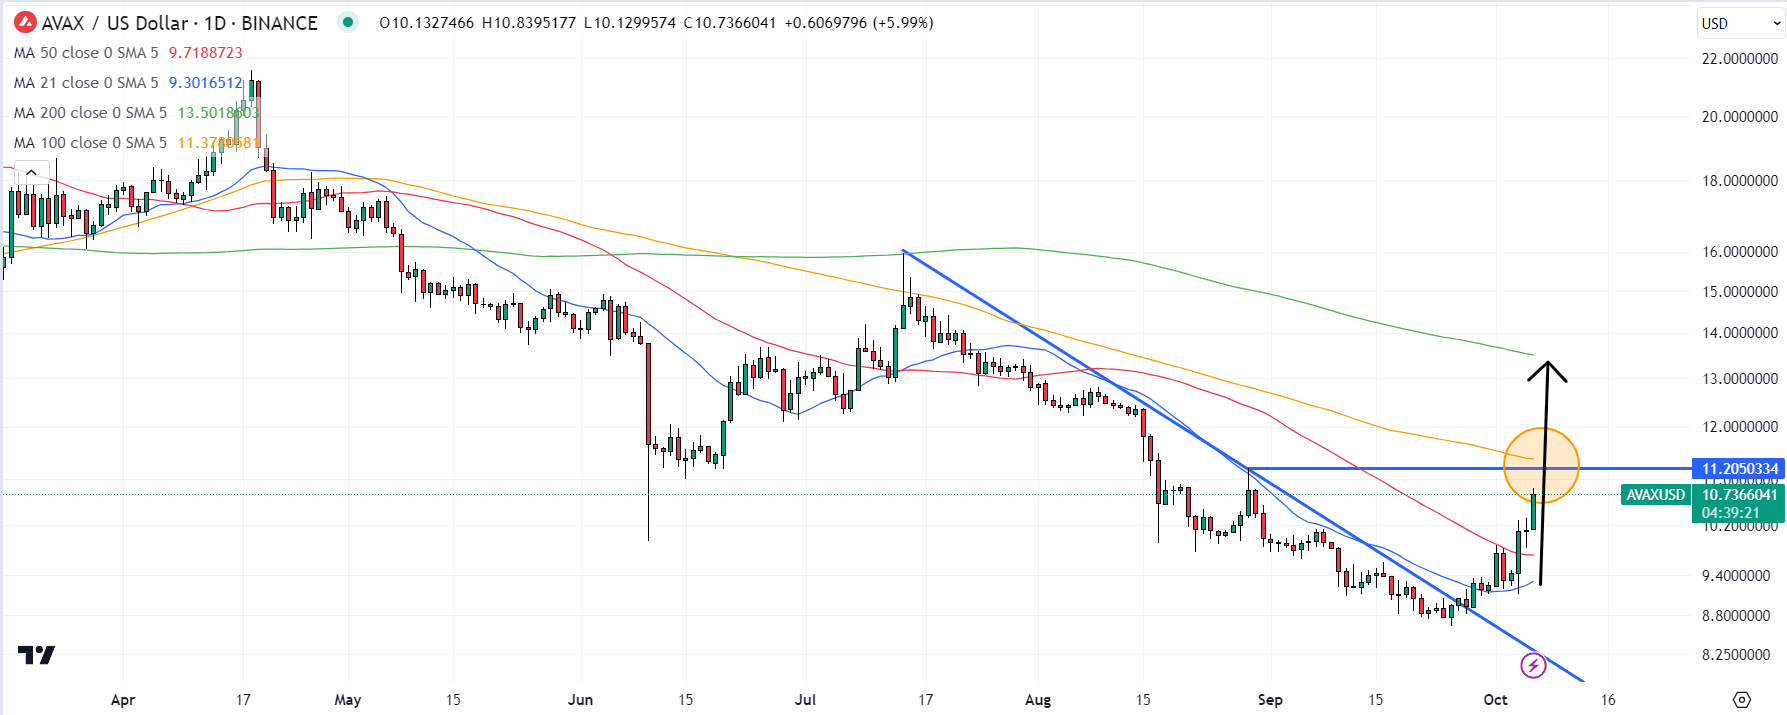 AVAX/USD Chart